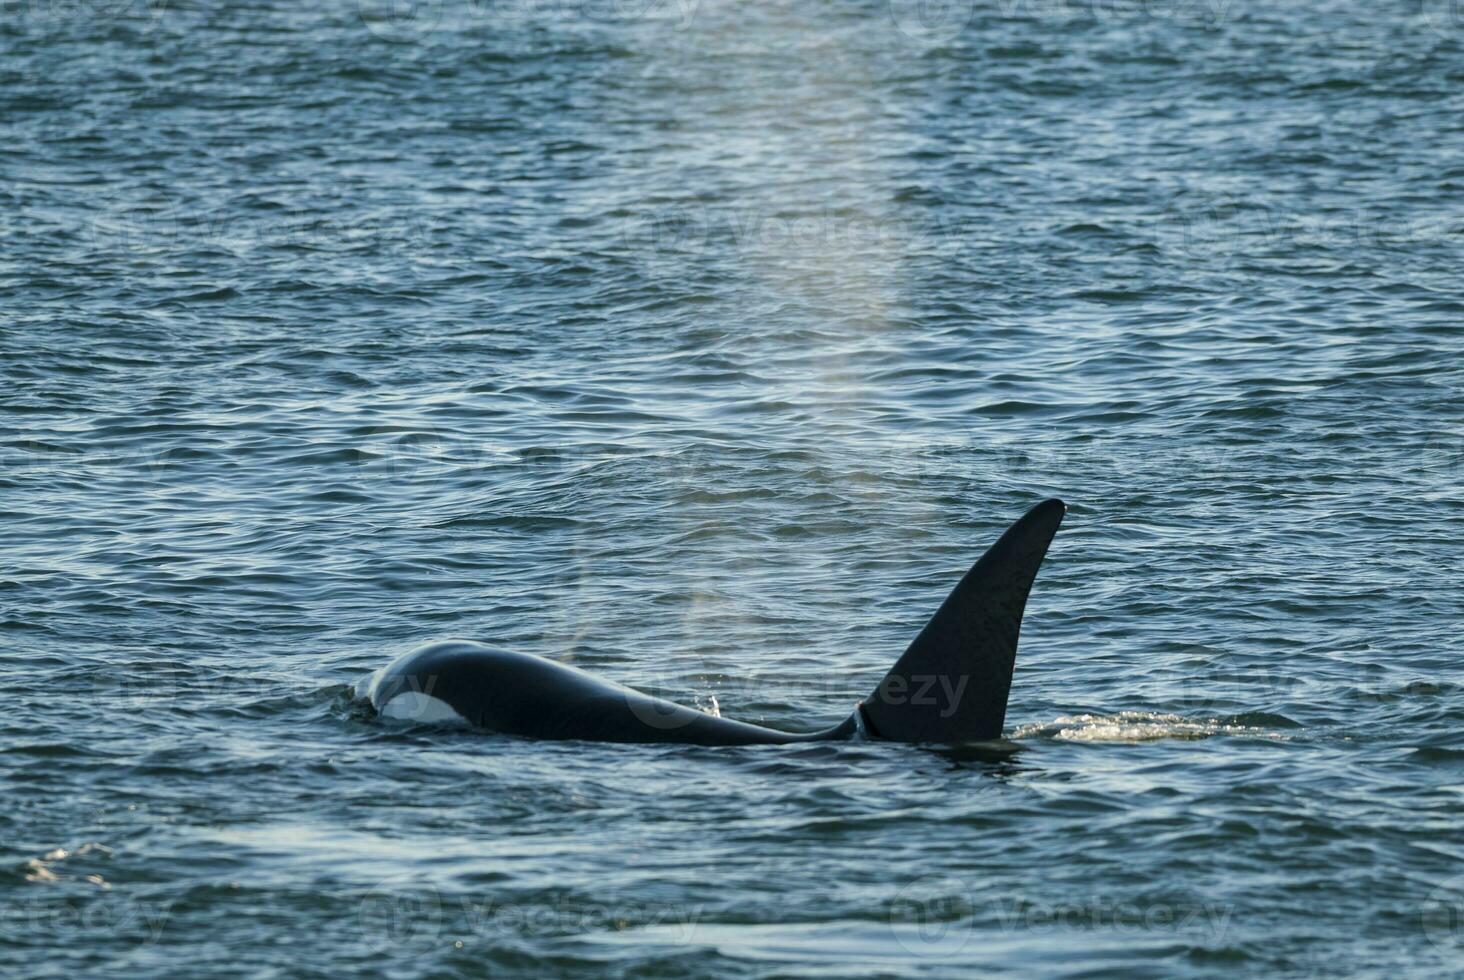 assassino baleia, orca, Caçando uma mar leão filhote, Península valdes, patagônia Argentina foto